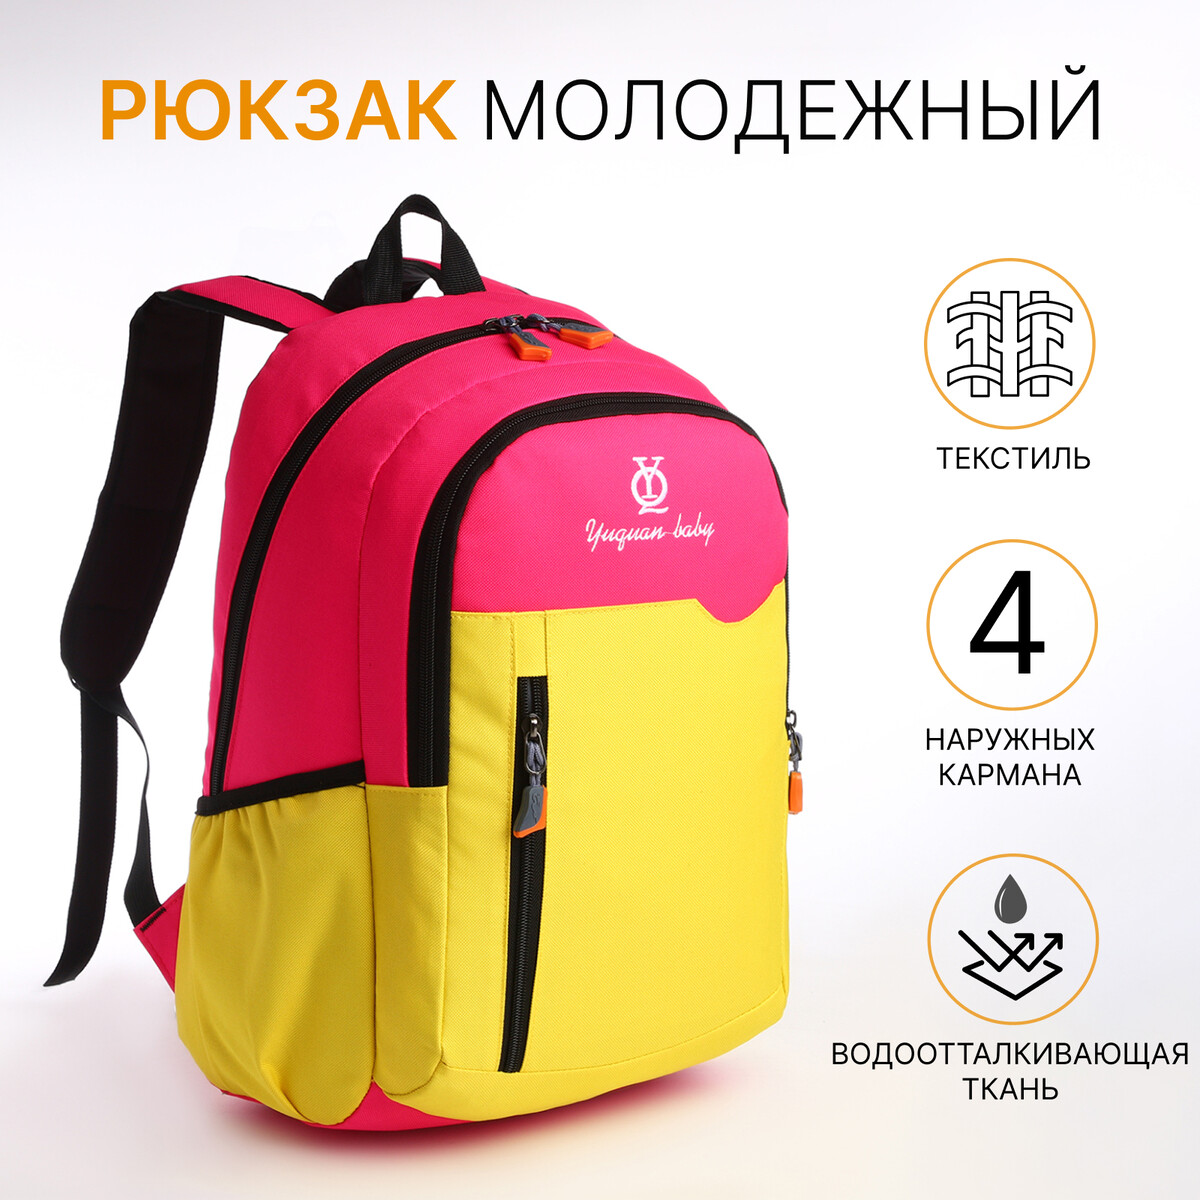 Рюкзак школьный, 2 отдела на молнии, 3 кармана, цвет розовый/желтый рюкзак молодежный из текстиля 2 отдела на молниях 3 кармана розовый